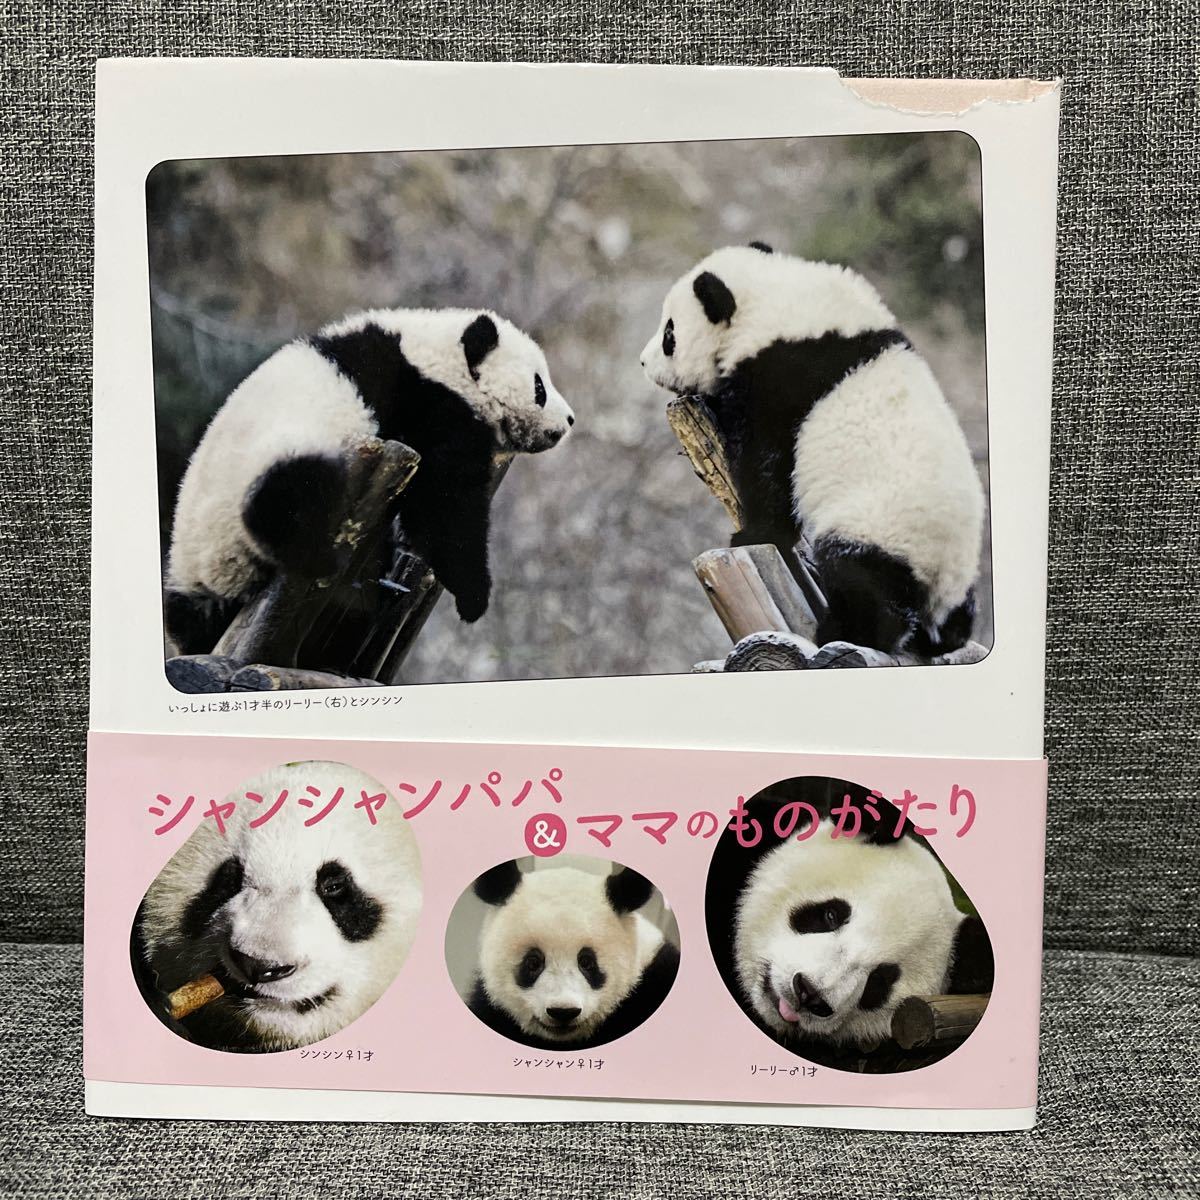 新版 リーリーとシンシン ２頭を育てた中国飼育研究員の手記 上野動物園 パンダ リーリー シンシン_画像2